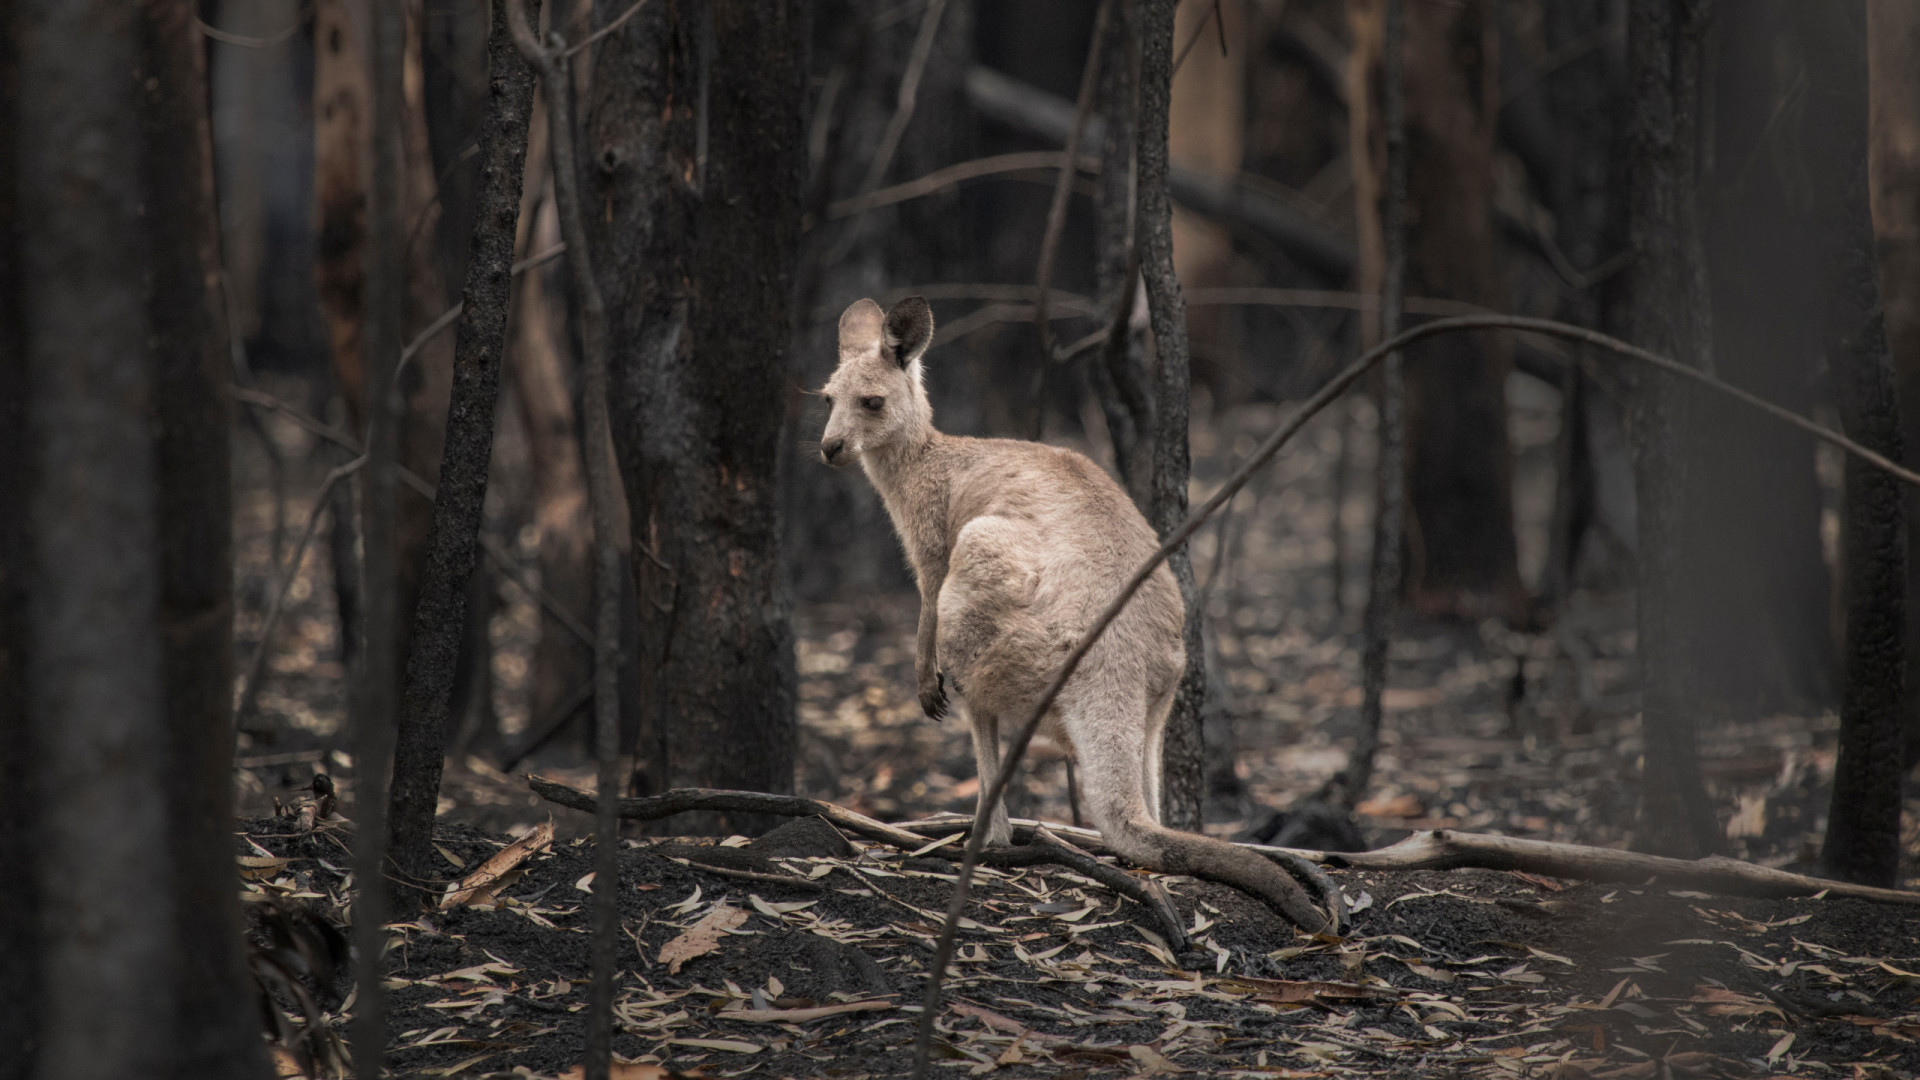 austrália: calor e ameaças de incêndio levam milhares a deixar casas